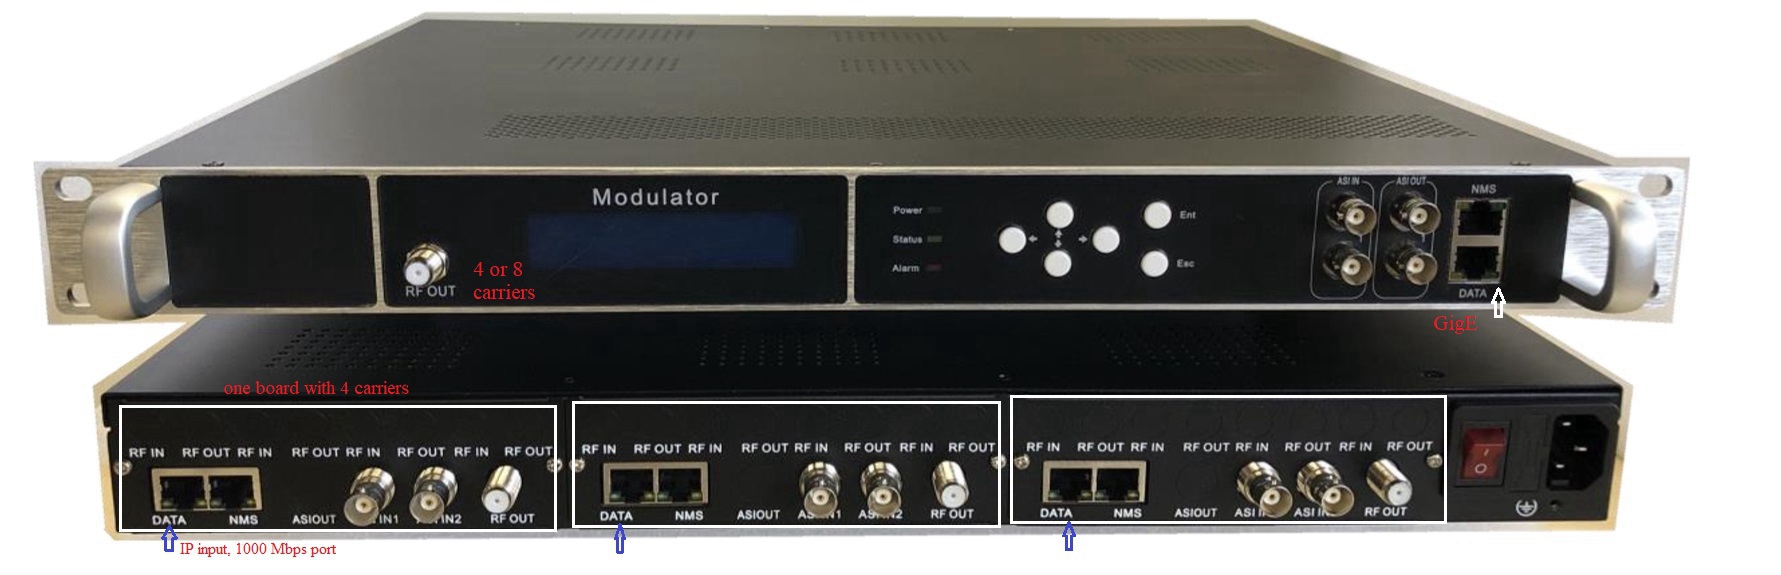 20 in 1 DVB-T/C/ISDB /ATSC Modulator 